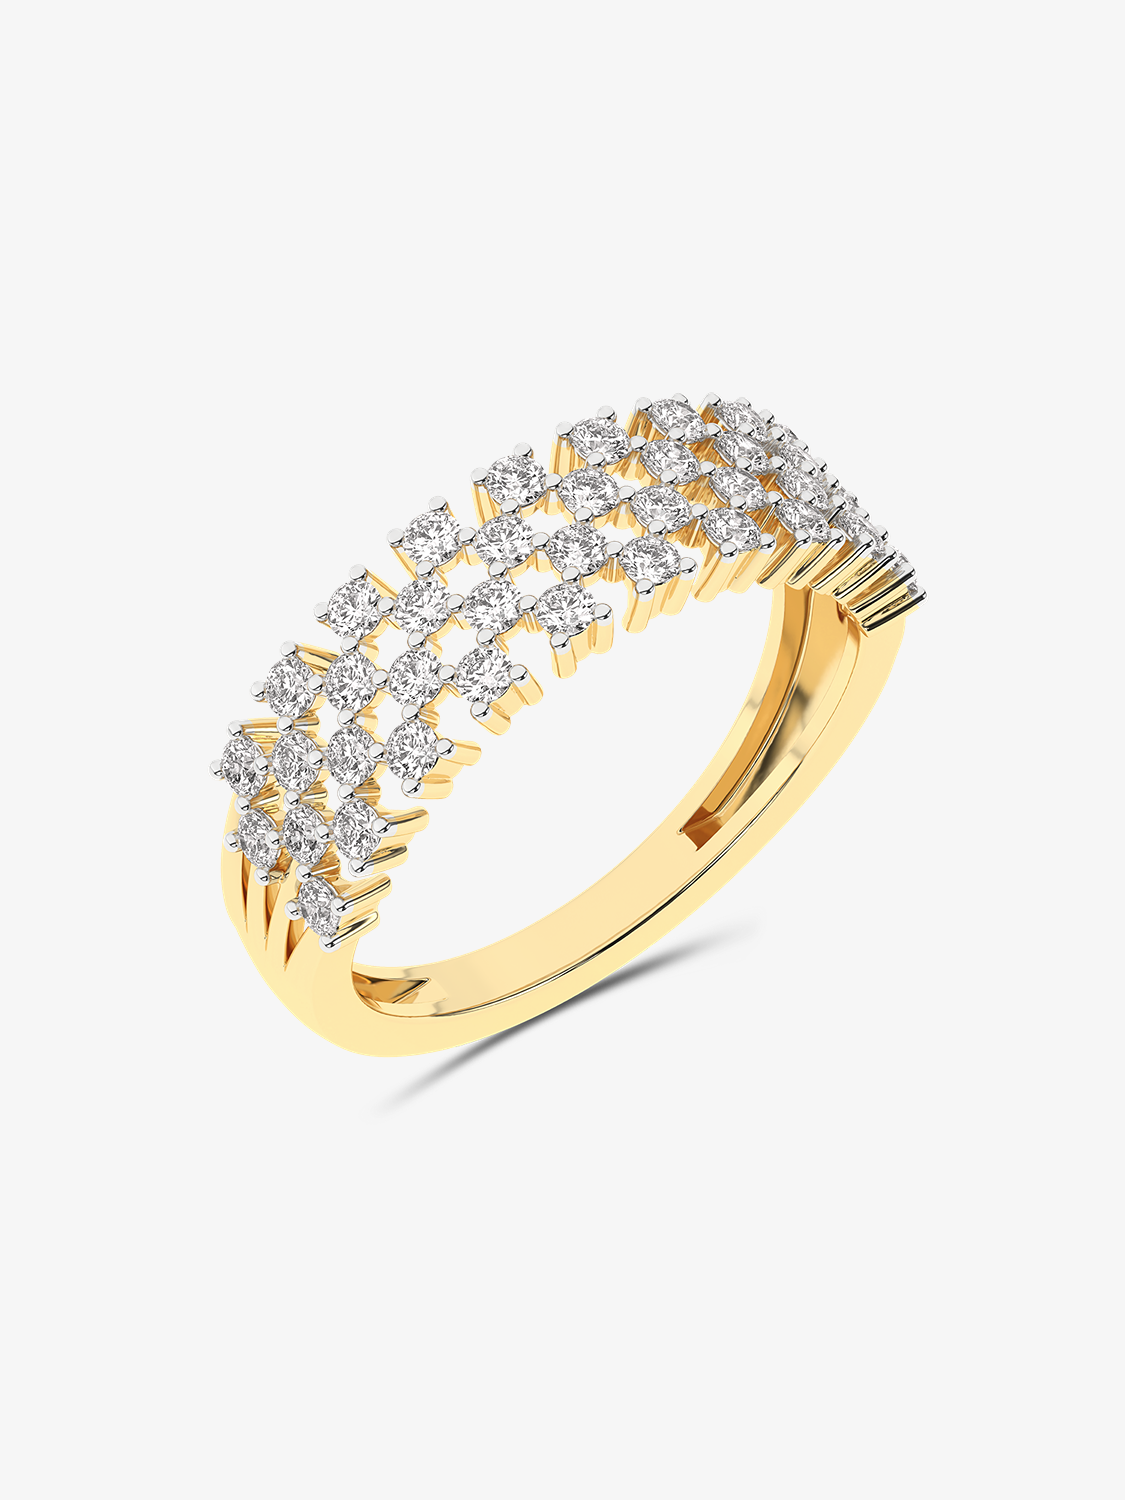 Złoty sygnet designerski z brylantami żółty - Venetia Jewels - 14K złoto z brylantami